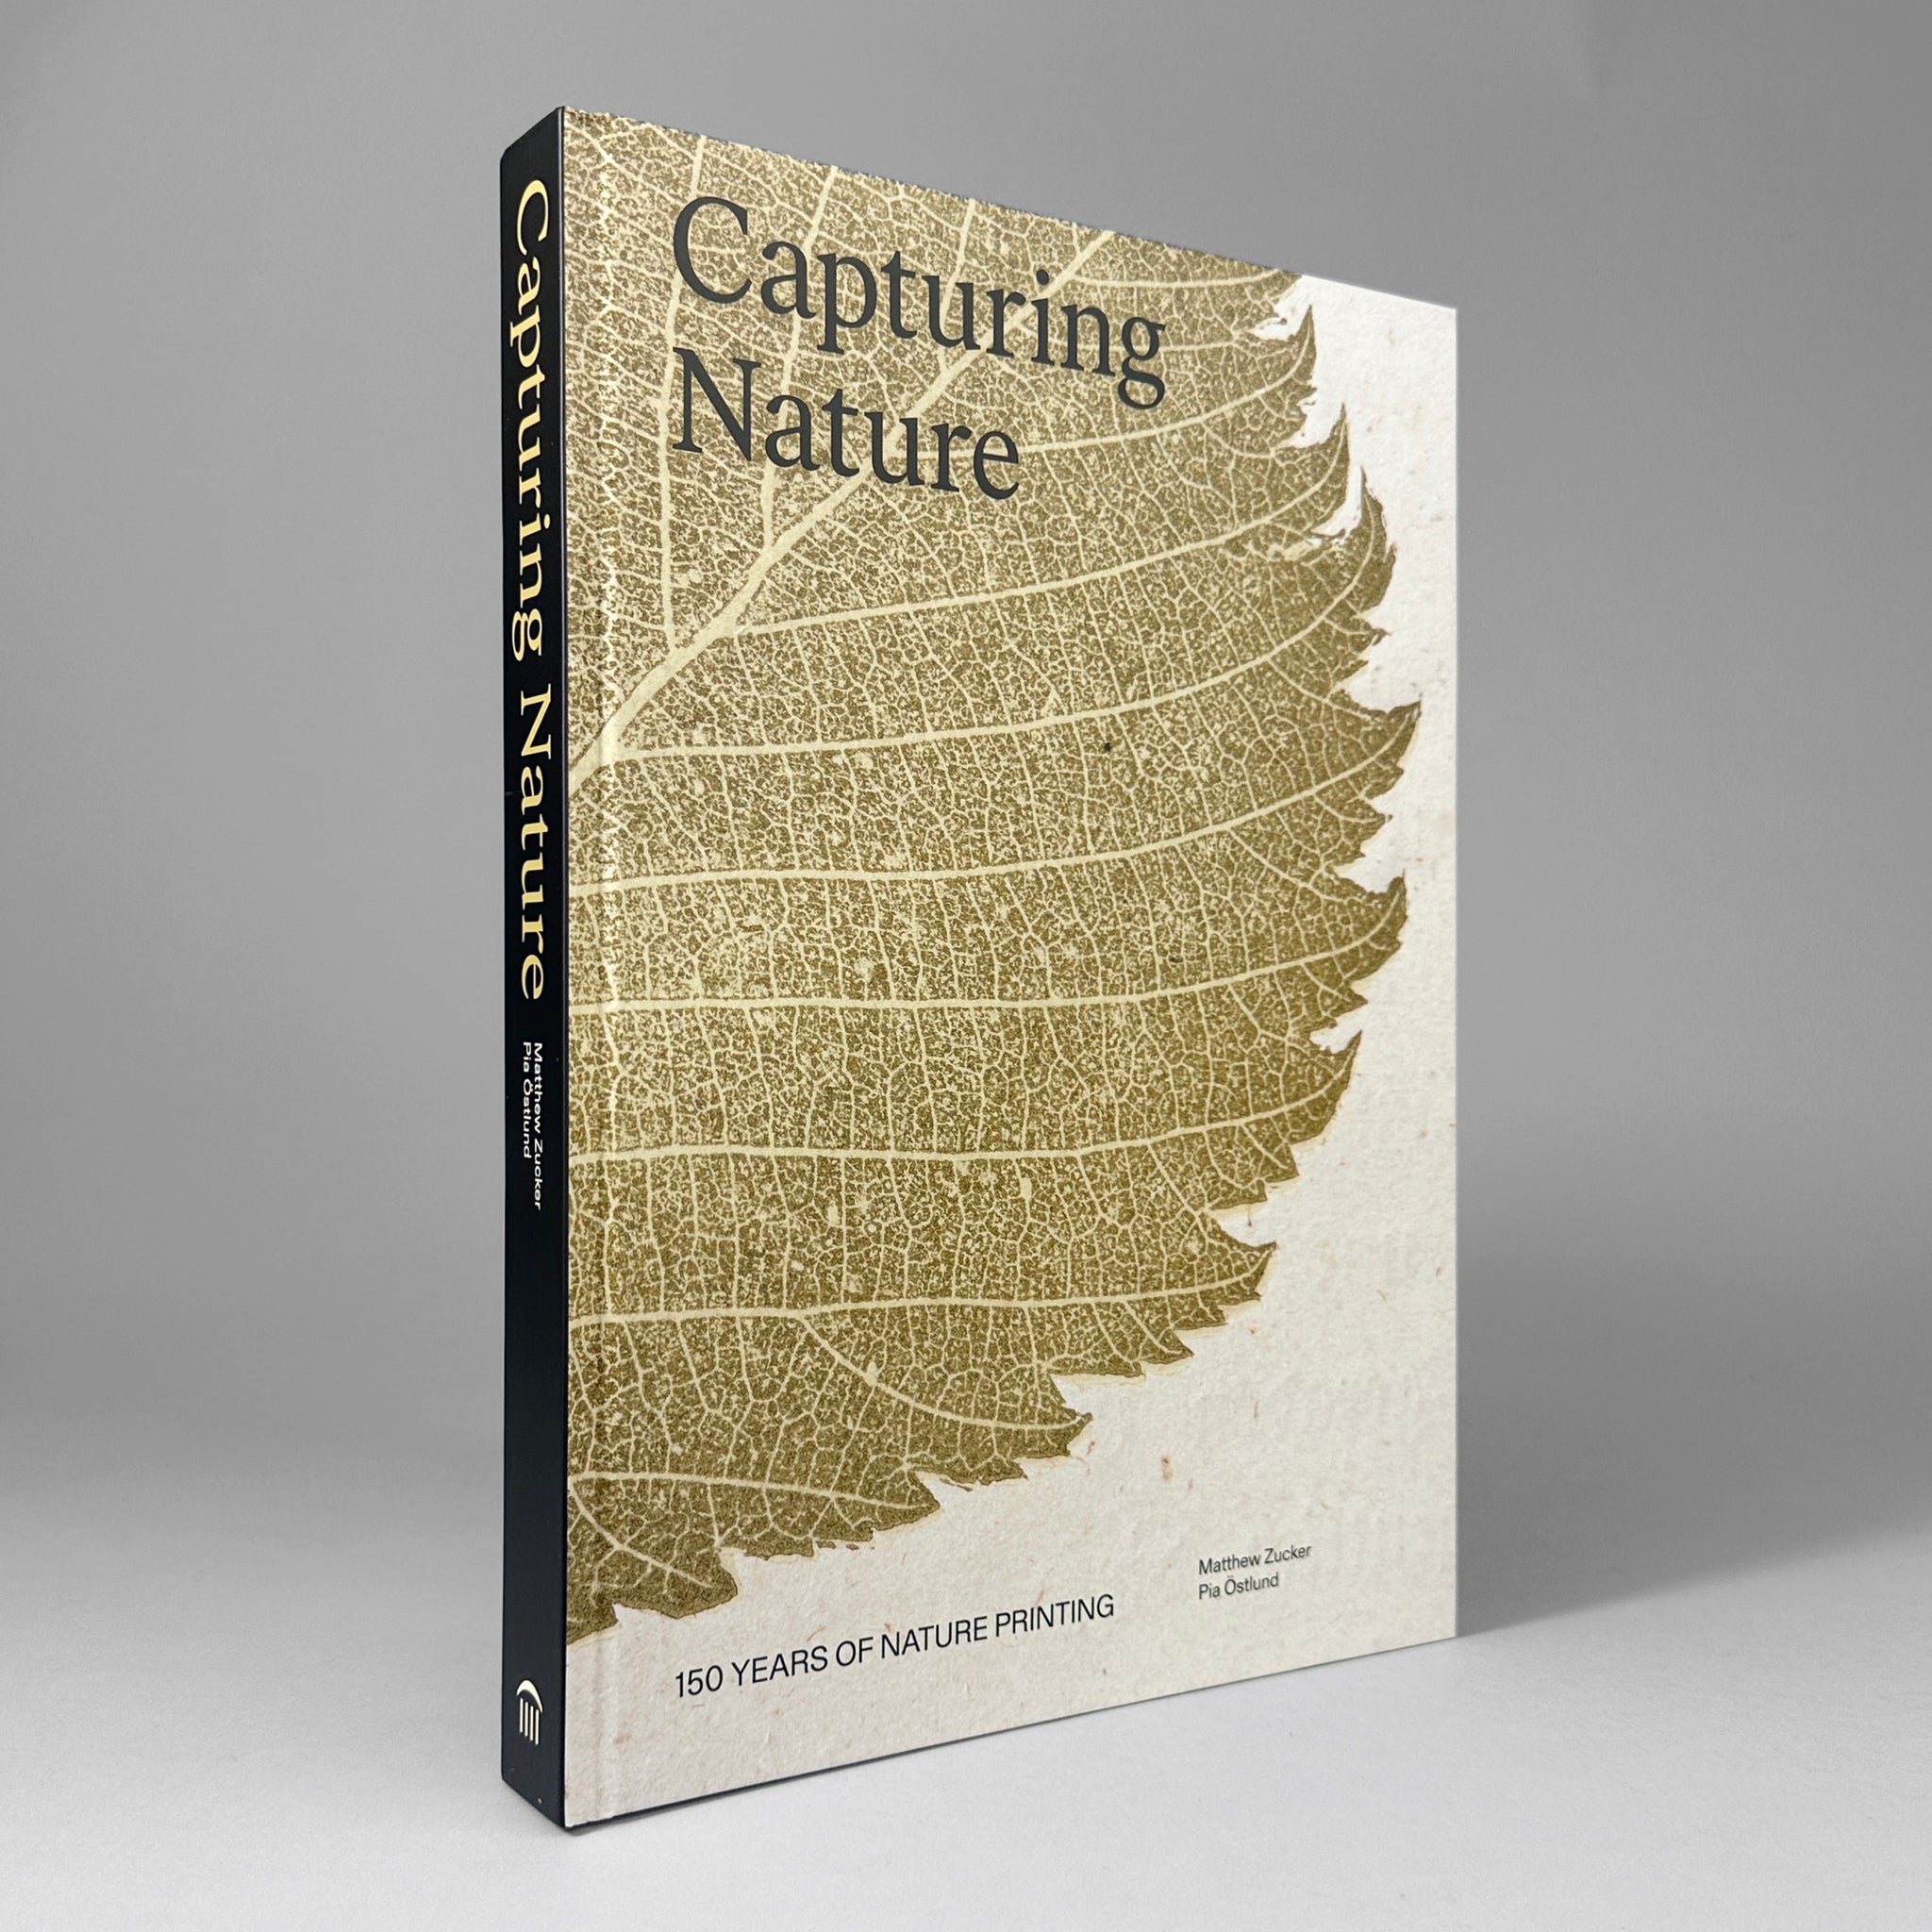 Capturing Nature: 100 Years of Nature Printing